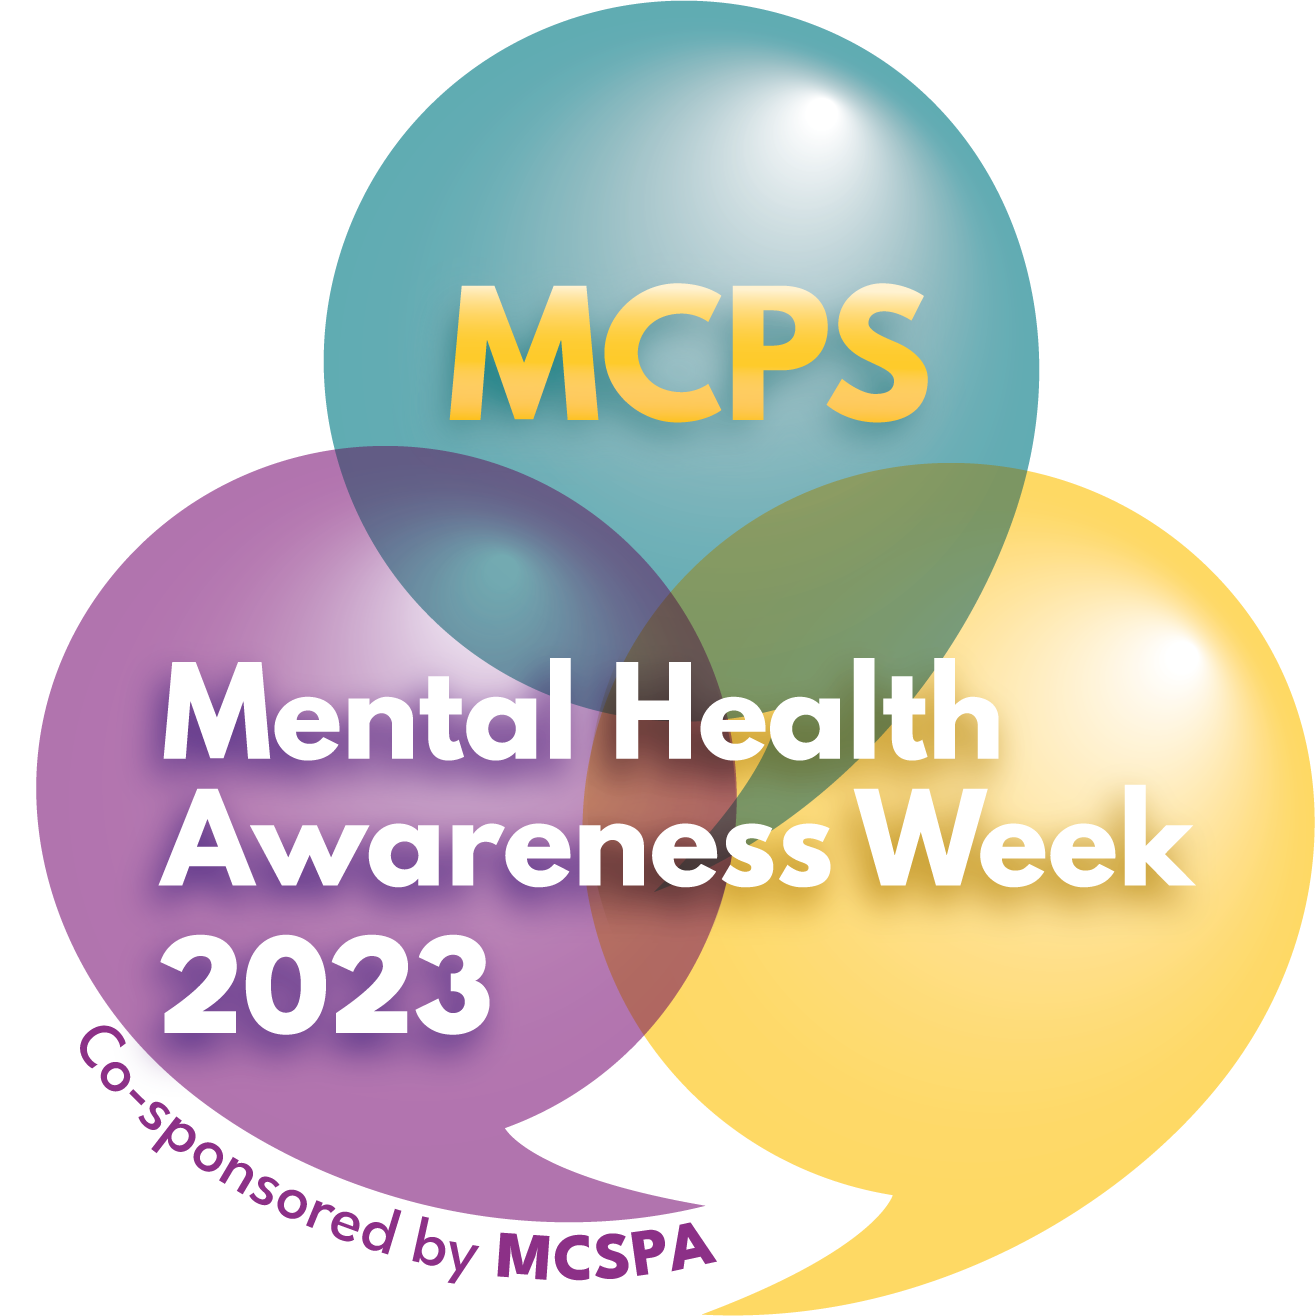 mental health awareness week logo, 2023.png